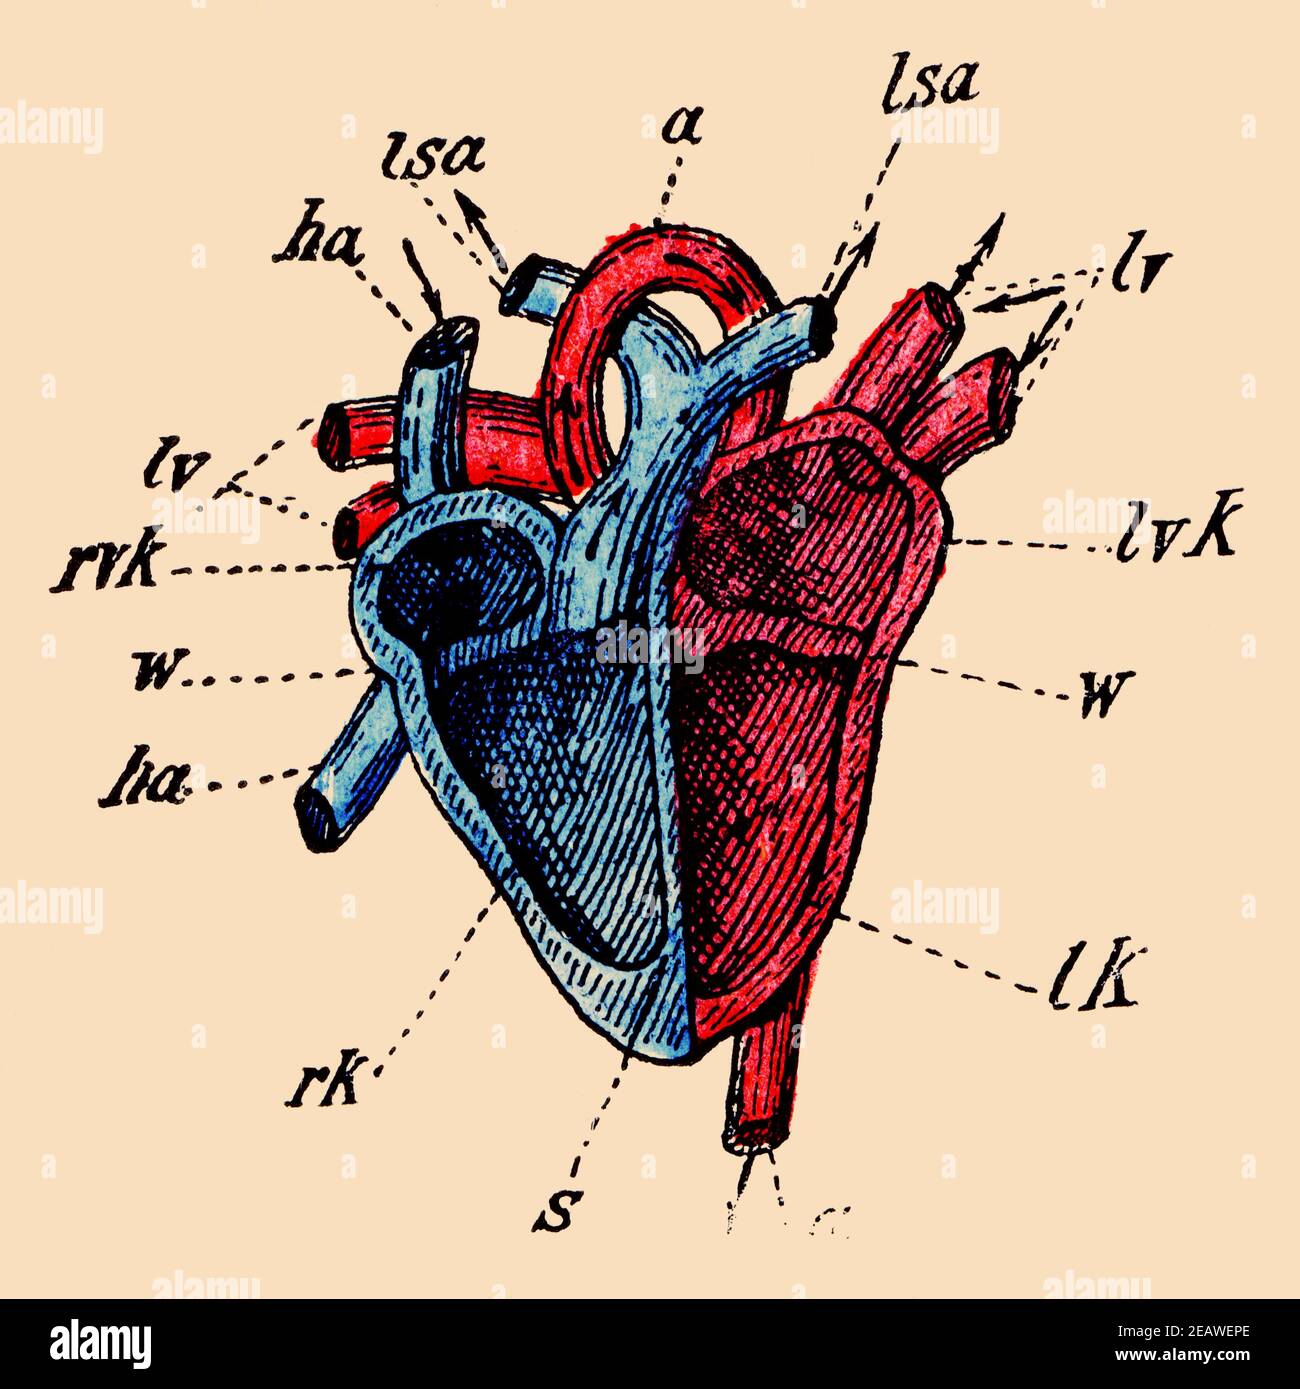 Vue schématique du cœur humain. Illustration du 19e siècle. Allemagne. Image couleur. Banque D'Images